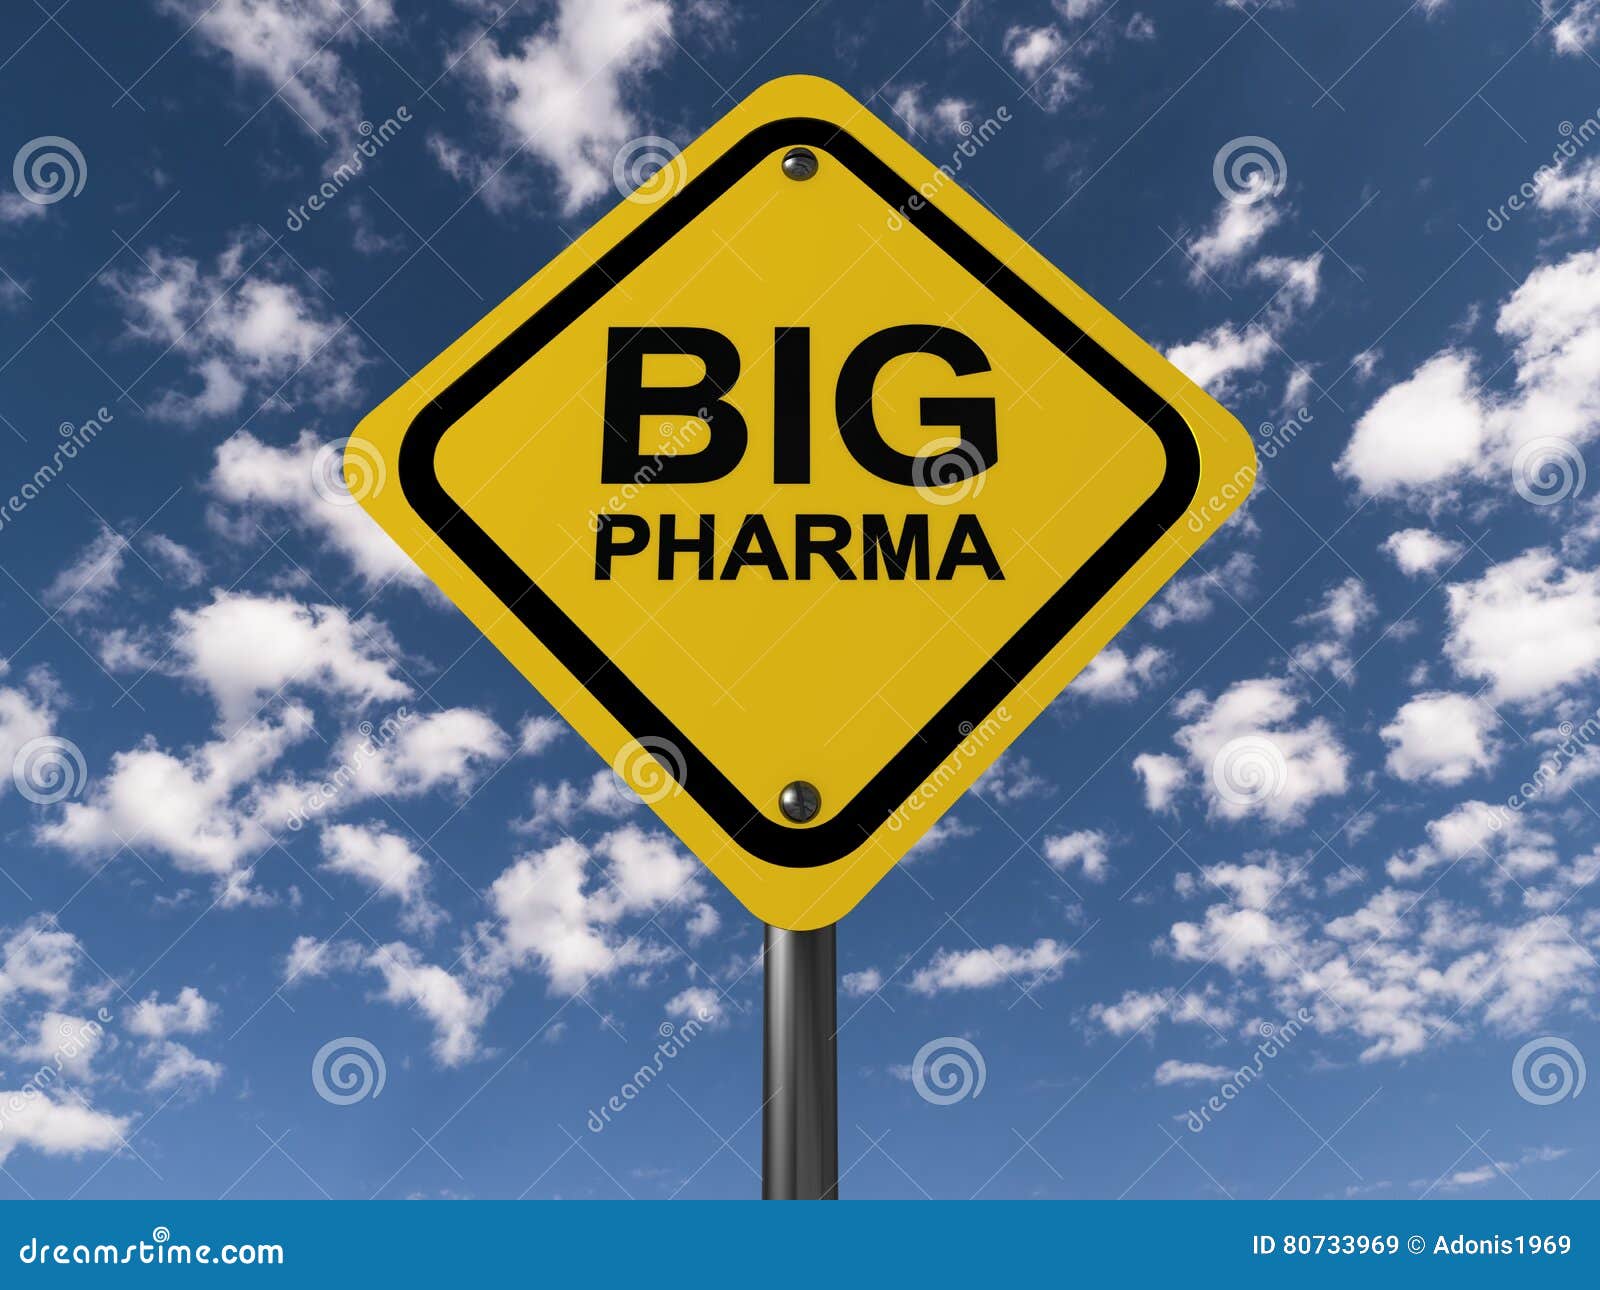 text big pharma